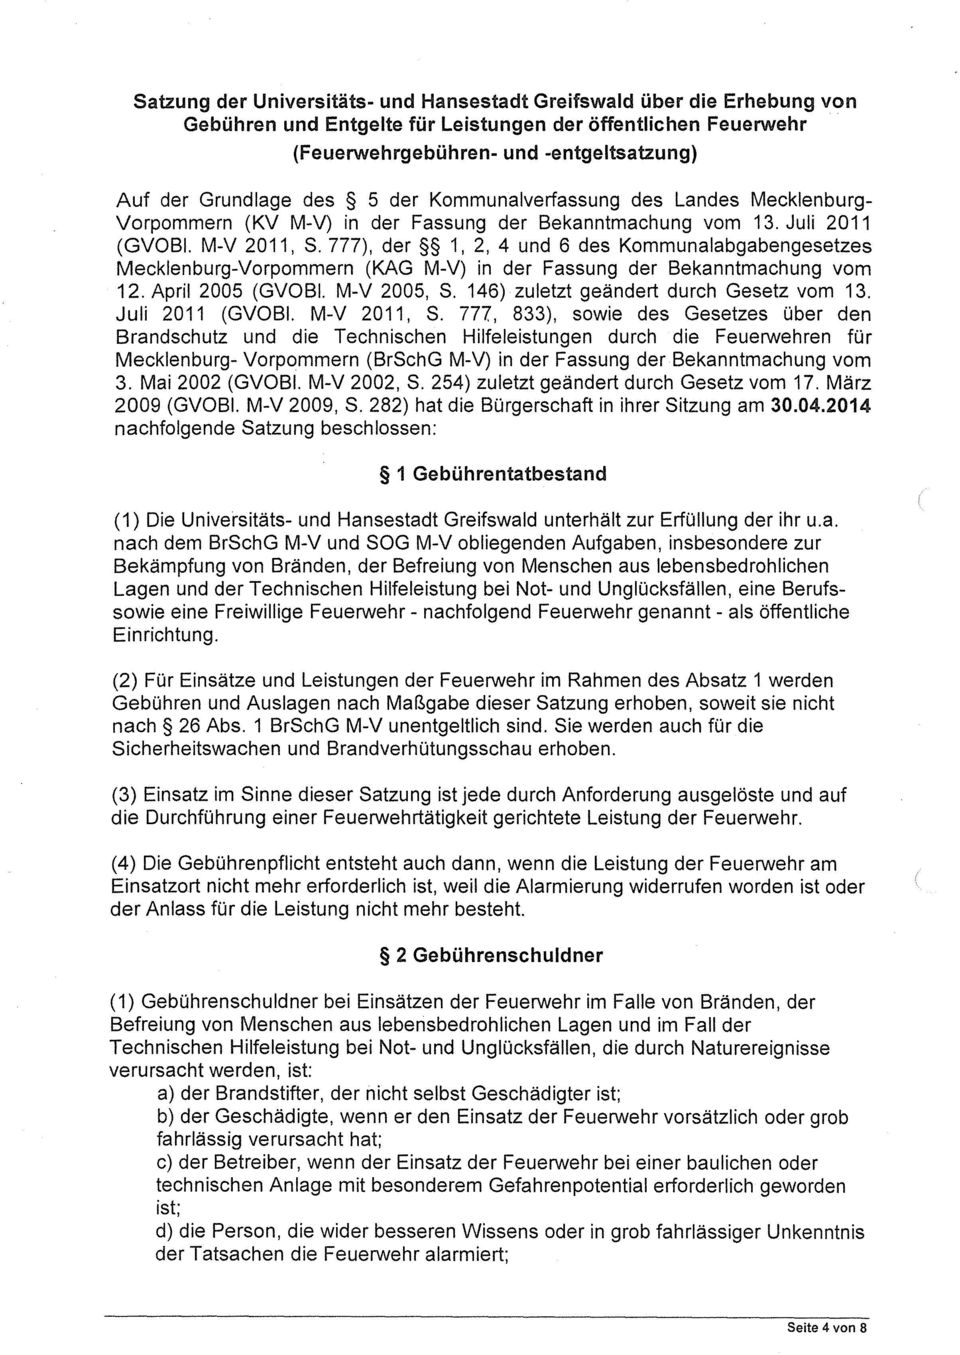 777), der 1, 2, 4 und 6 des Kommunalabgabengesetzes Mecklenburg-Vorpommern (KAG M-V) in der Fassung der Bekanntmachung vom 12. April 2005 (GVOBI. M-V 2005, S.